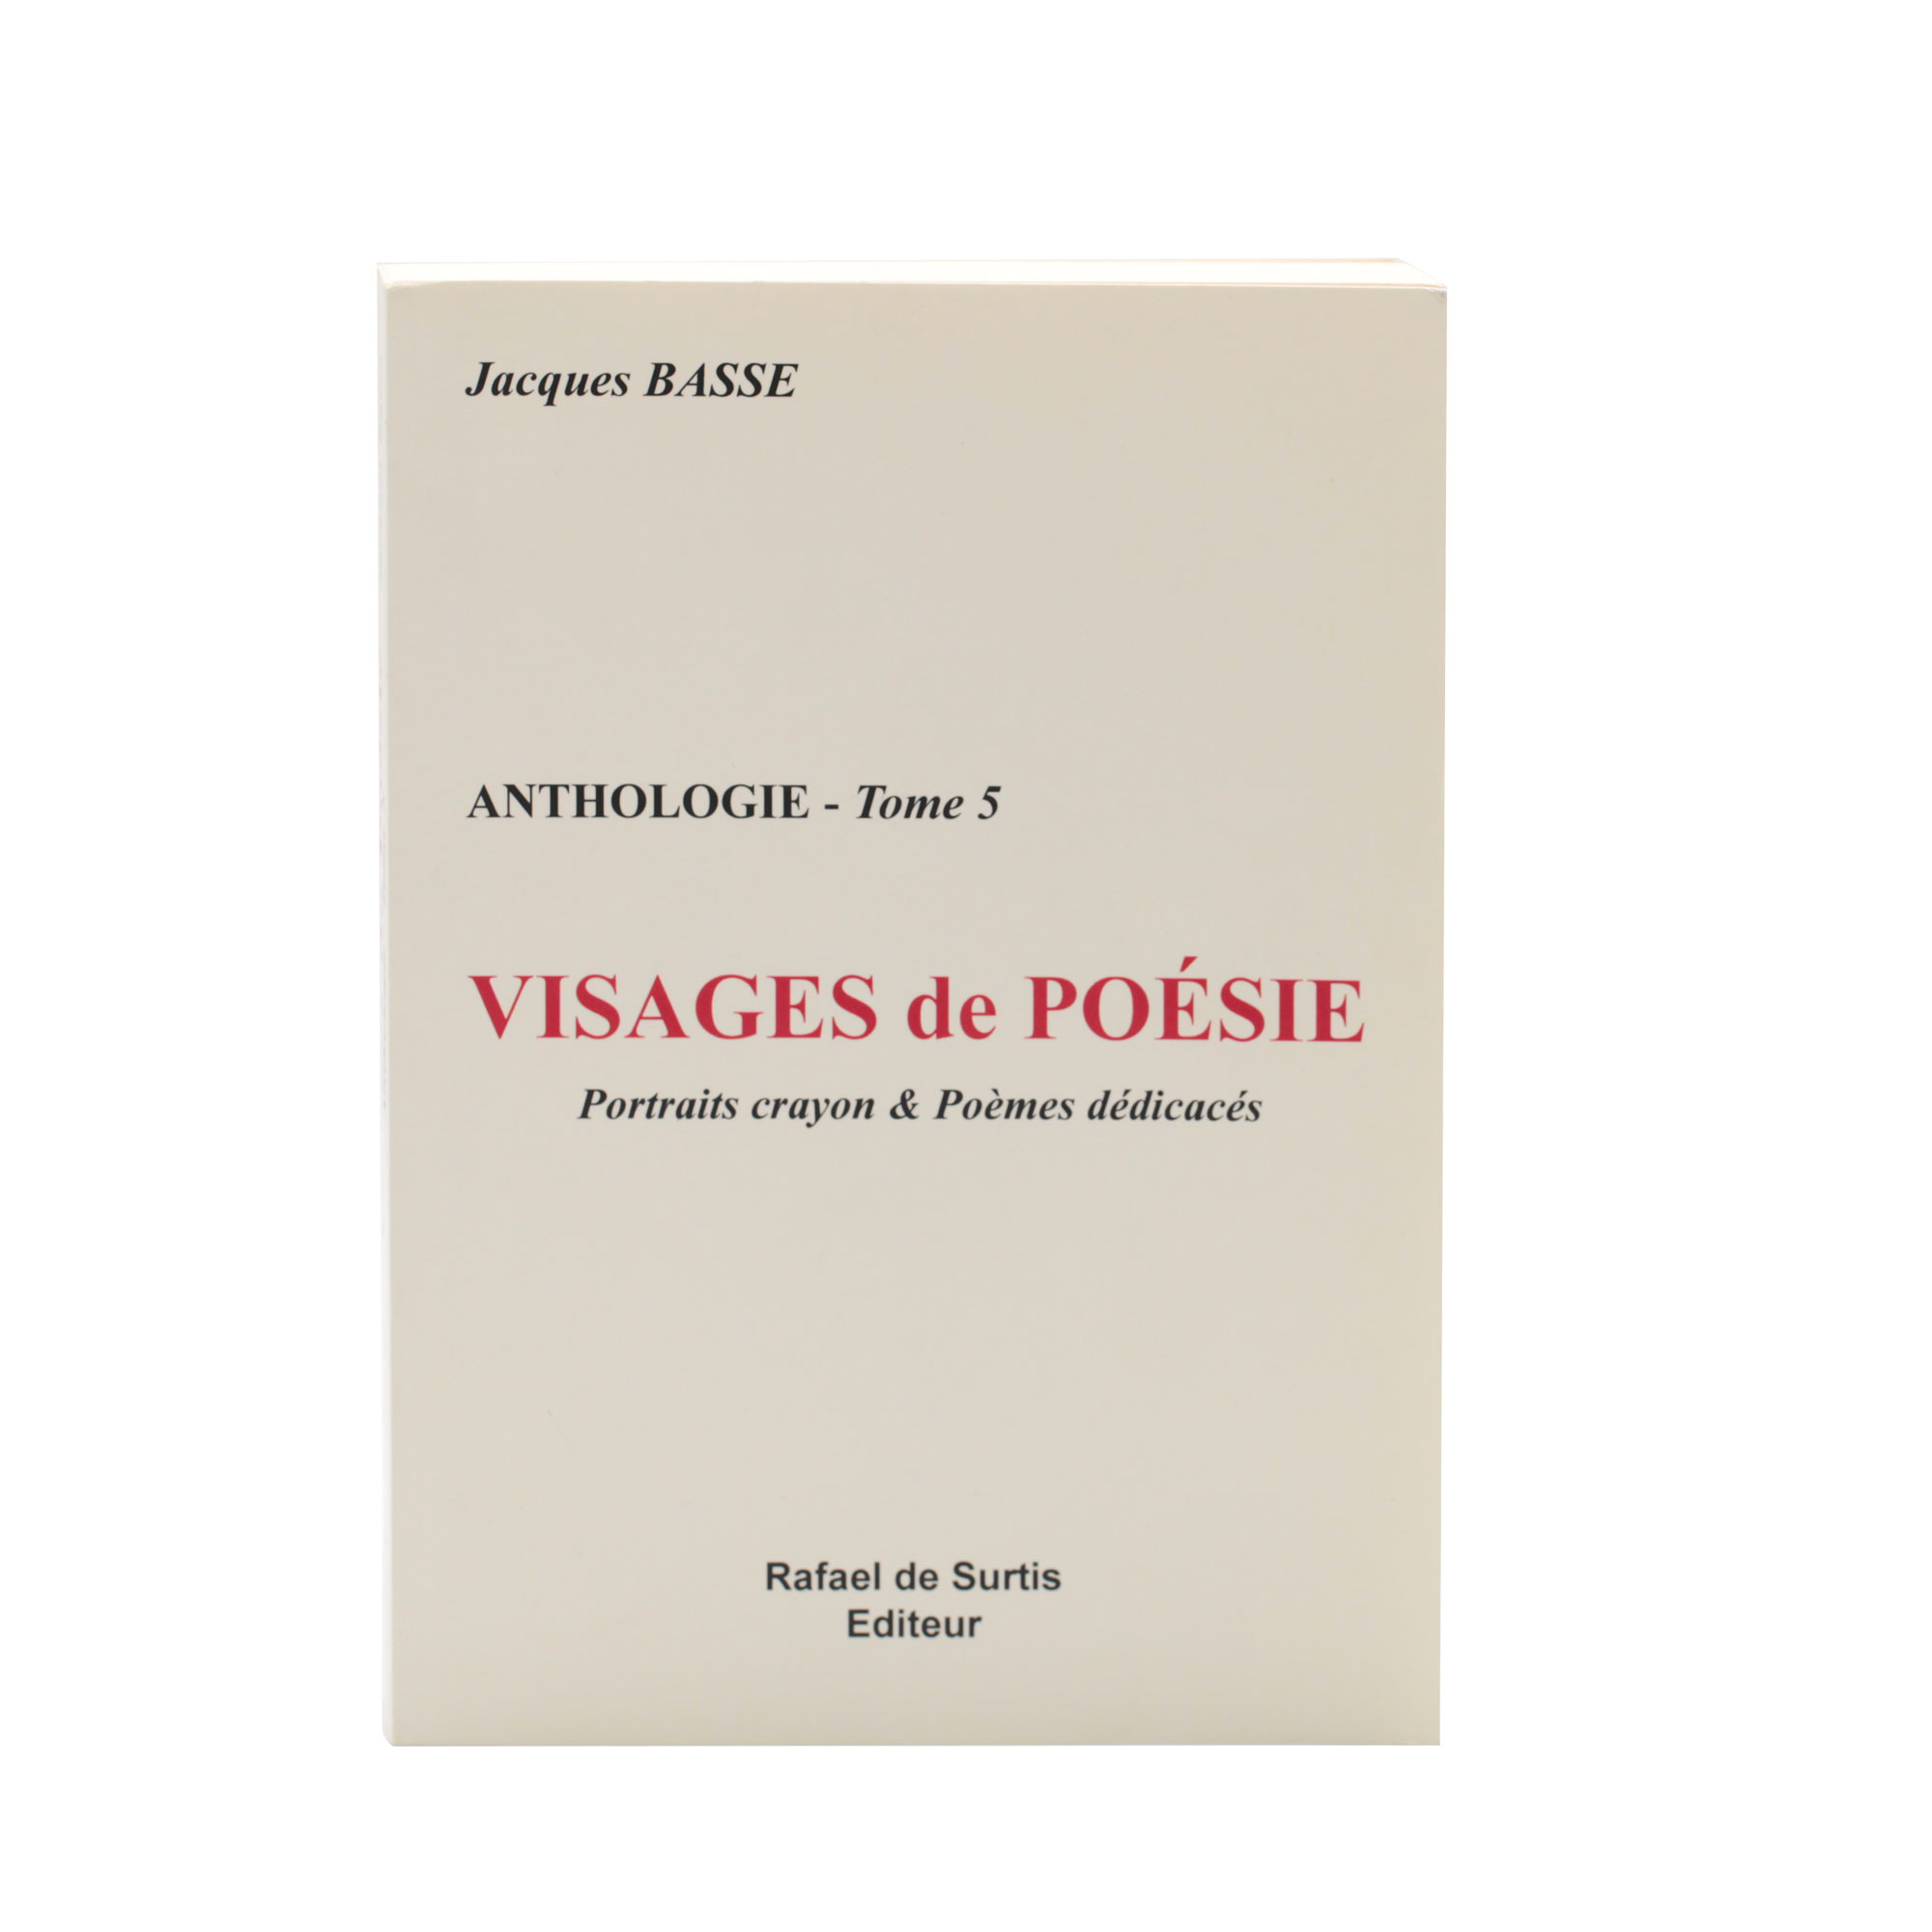 aima-lichtblau-jacques-basse-visage-de-poesie-anthologie-tome-5-rafael-de-surtis-editeur